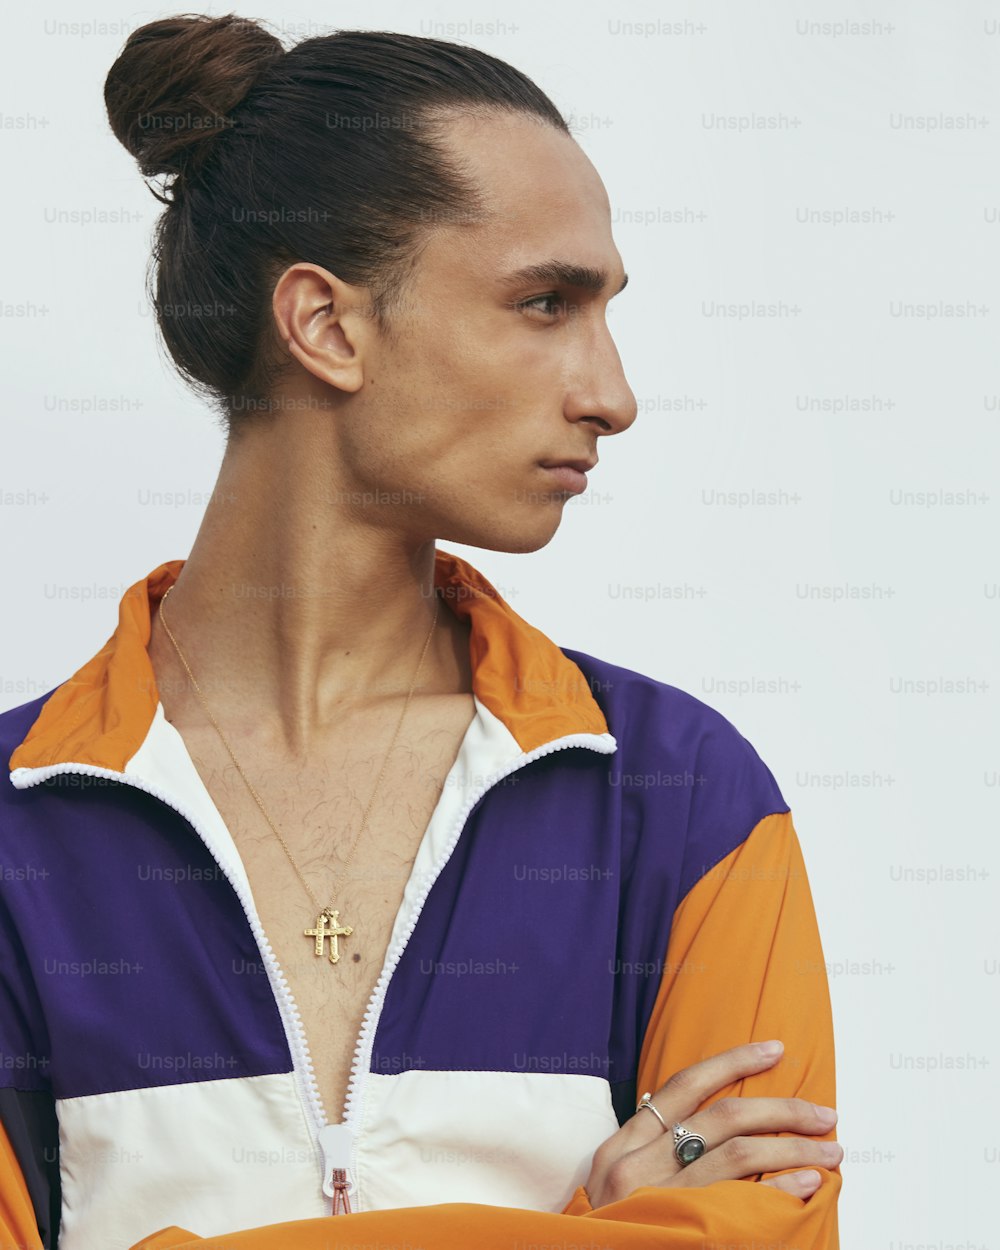 Un hombre con los brazos cruzados con una chaqueta naranja y púrpura